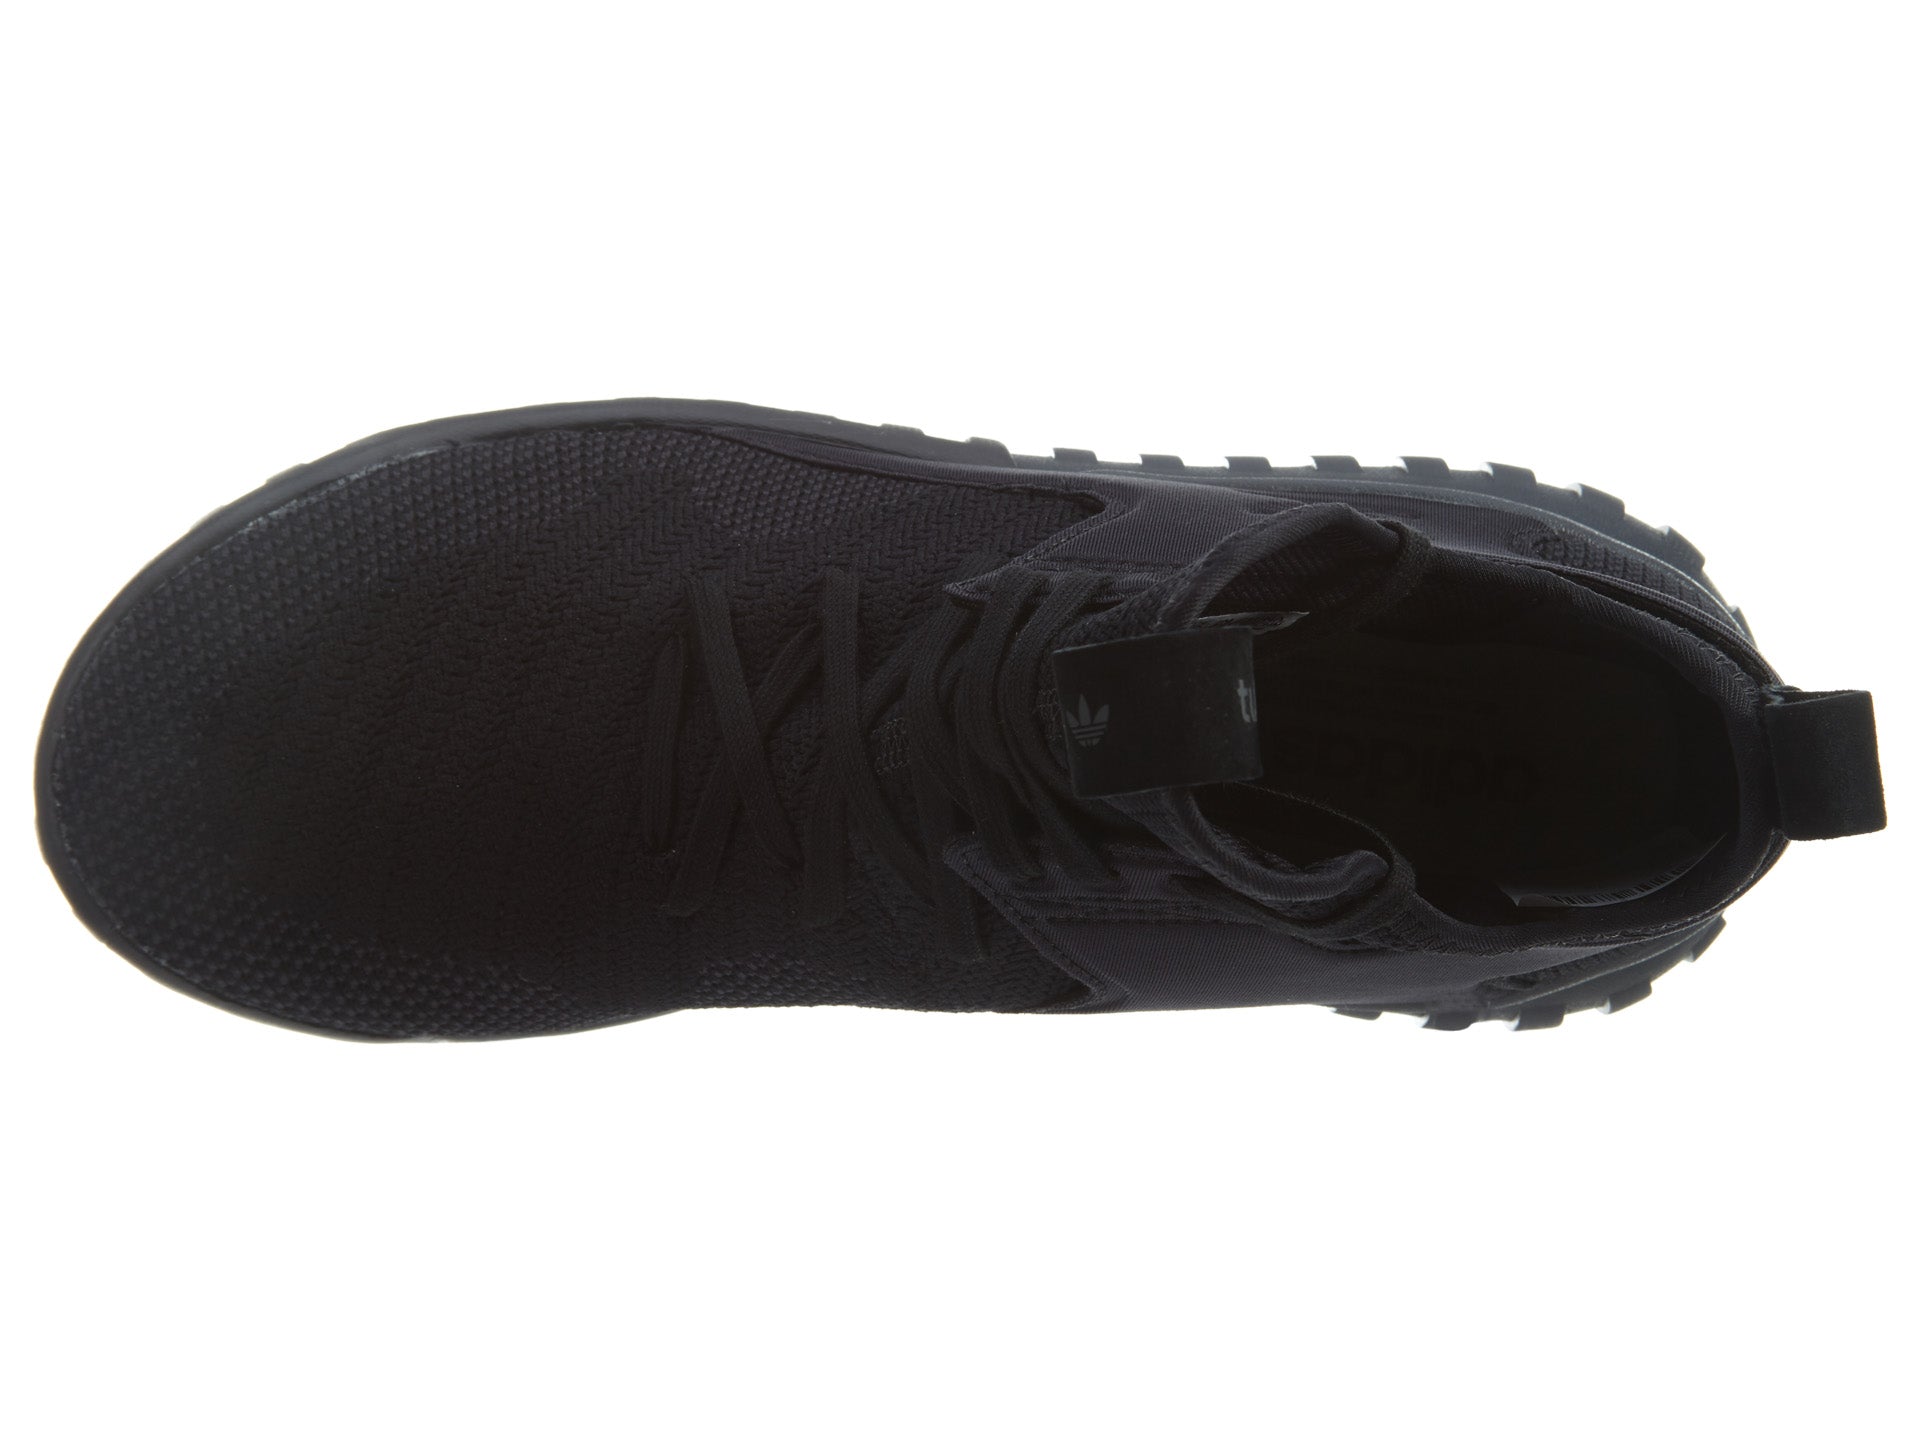 Adidas Tubular X Pk Black/Dark Grey/Black Mens Style :S80132